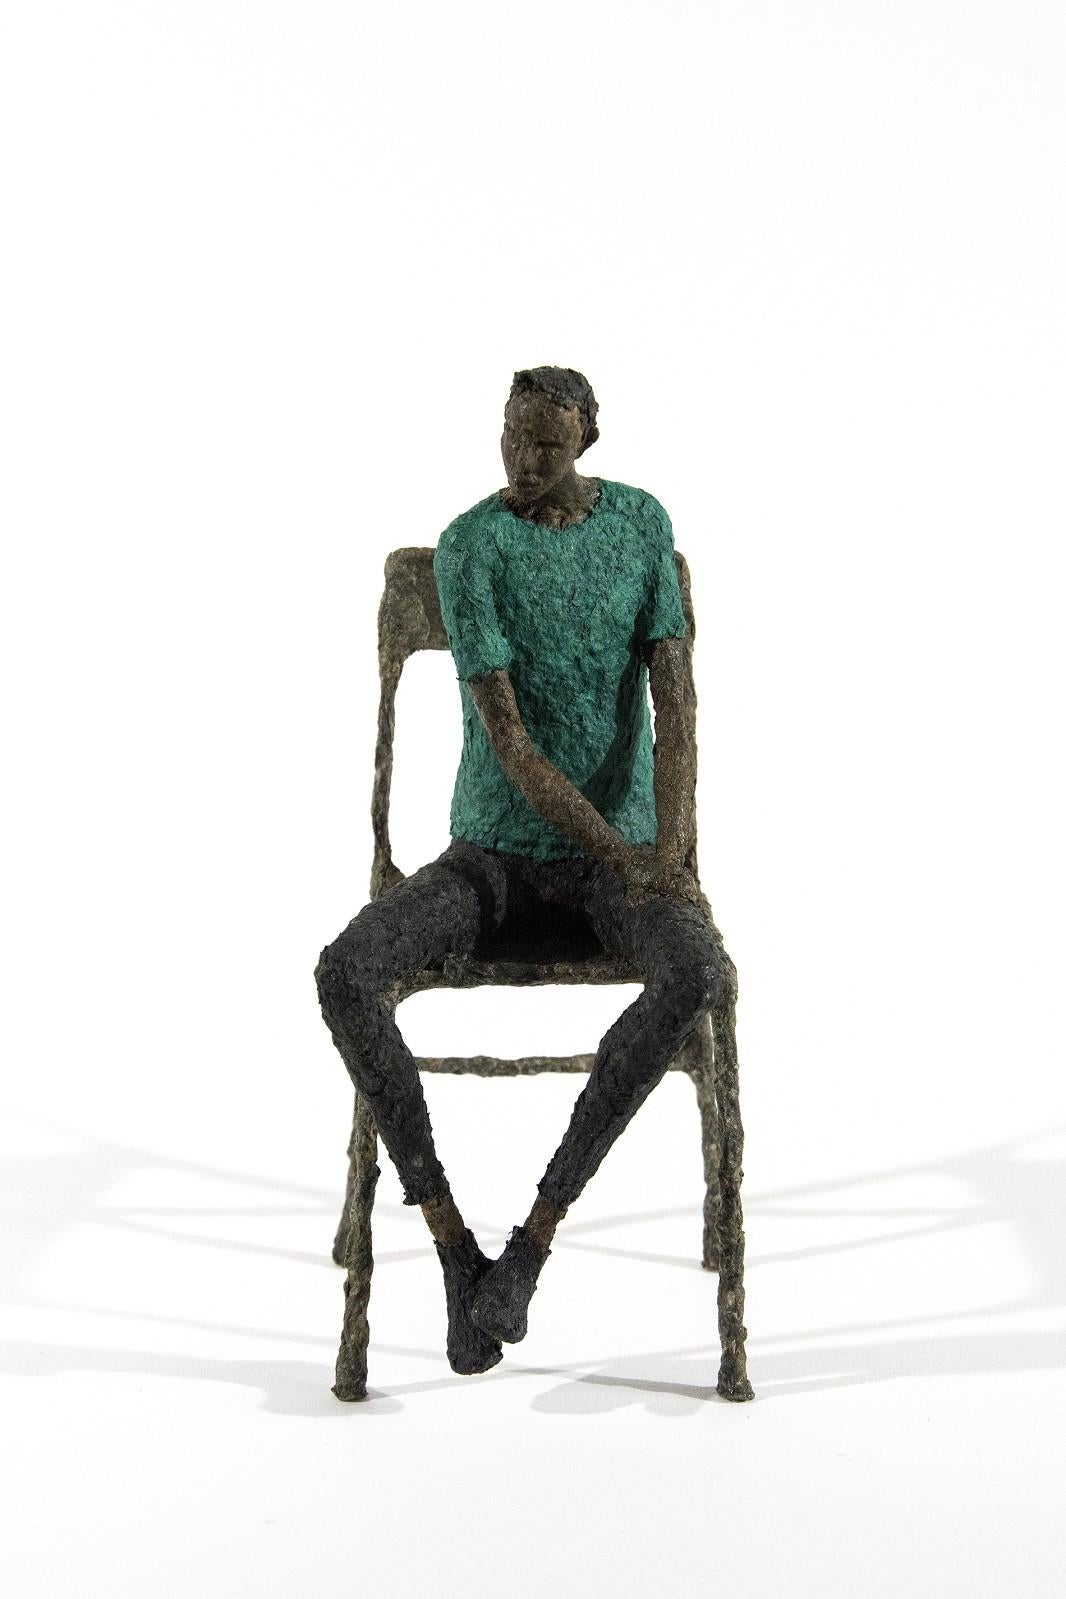 Paul Duval Figurative Sculpture - Waiting Man Blue and Green - expressive, figurative, male, paper mache sculpture